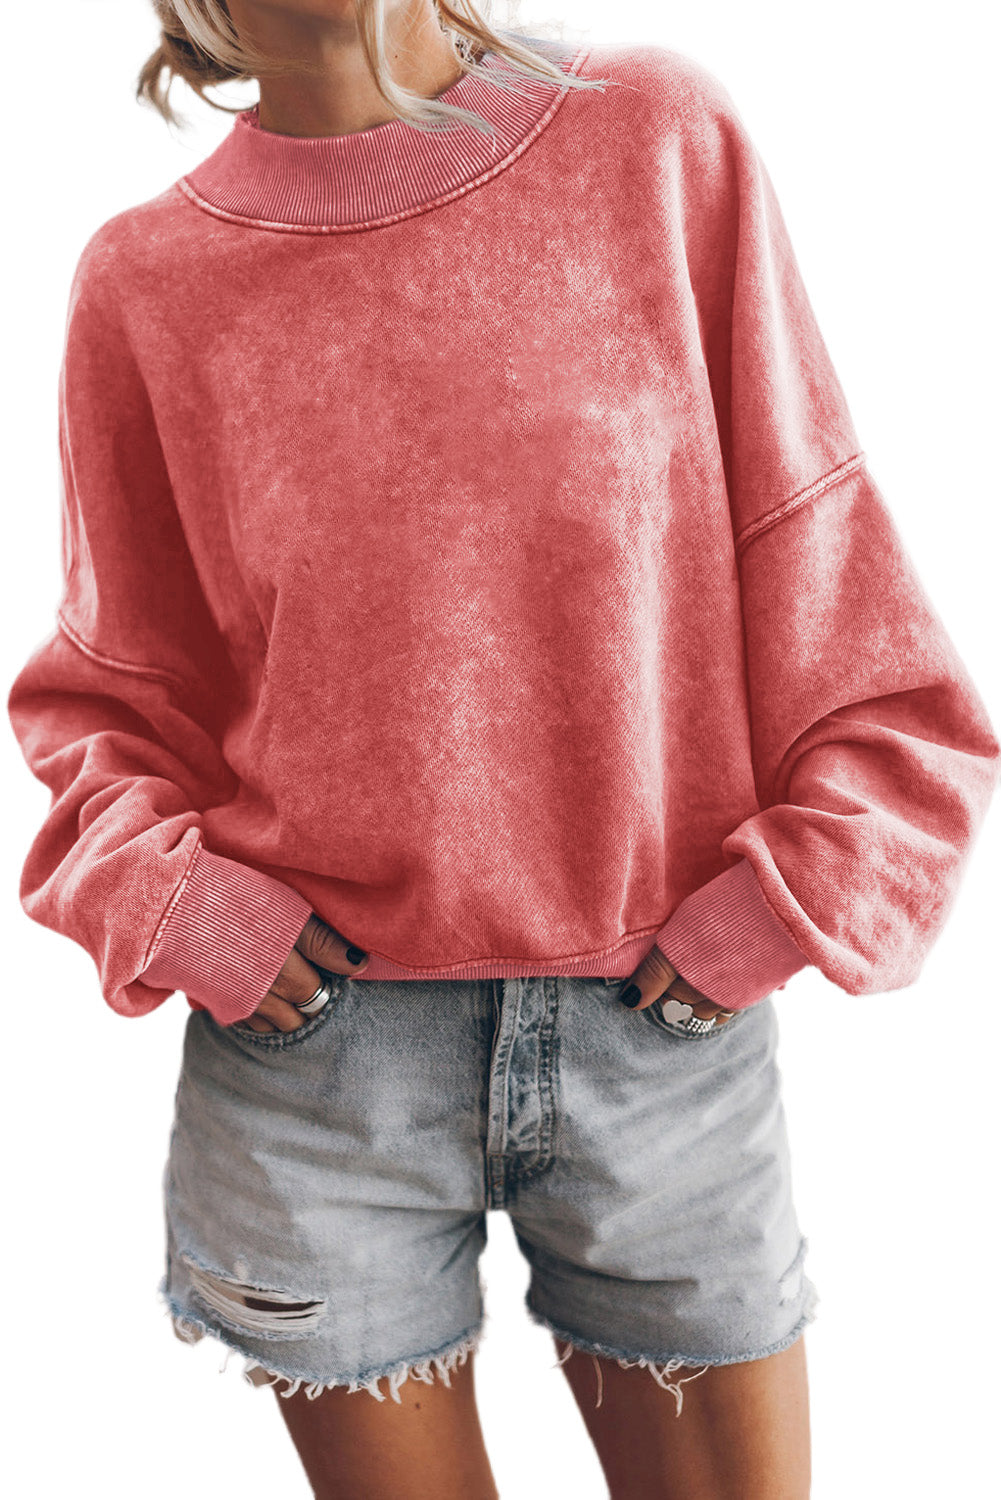 Pulover Pulover z okroglim izrezom in spuščenimi rameni rdeče barve Dahlia